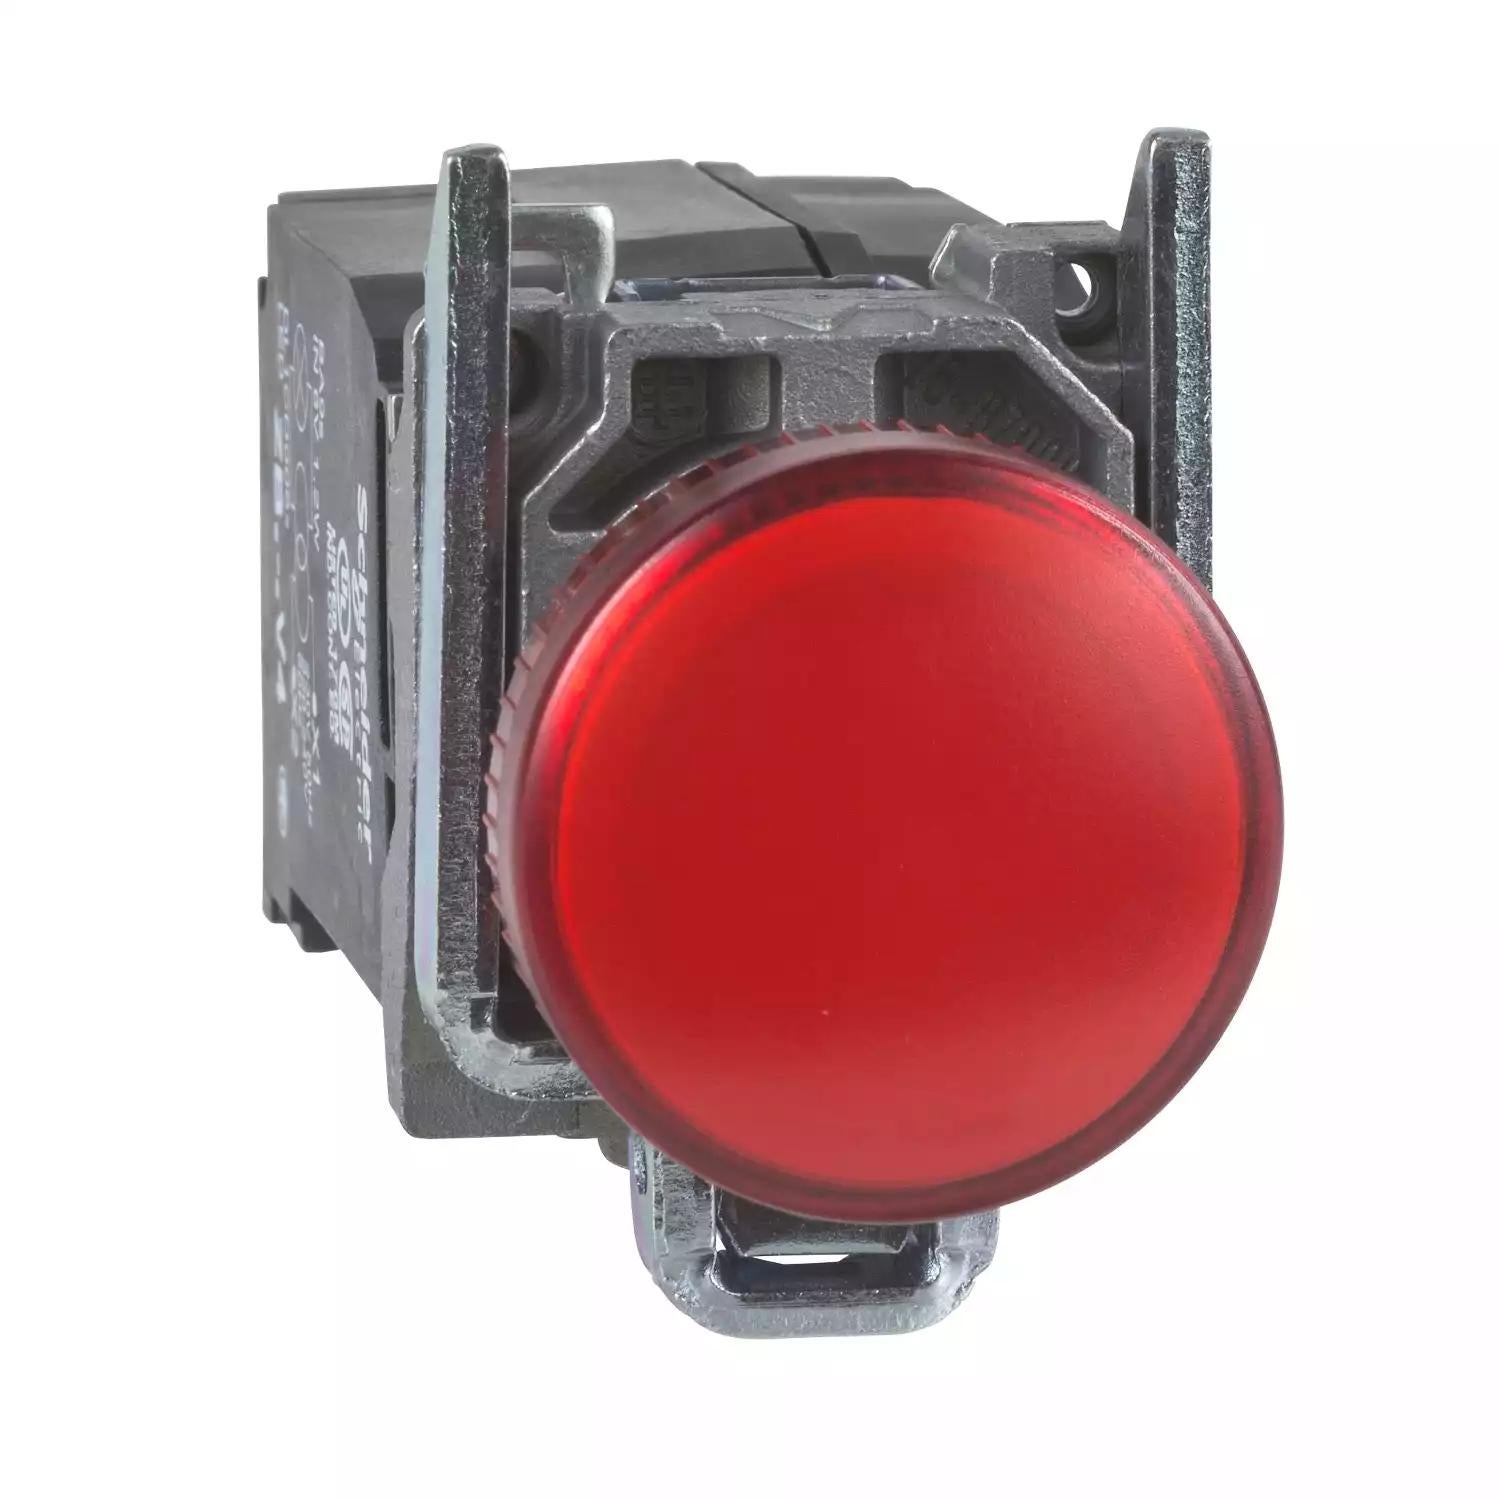 Harmony XB4, Pilot light, metal, red, Ø22, plain lens with integral LED, 230...240 VAC